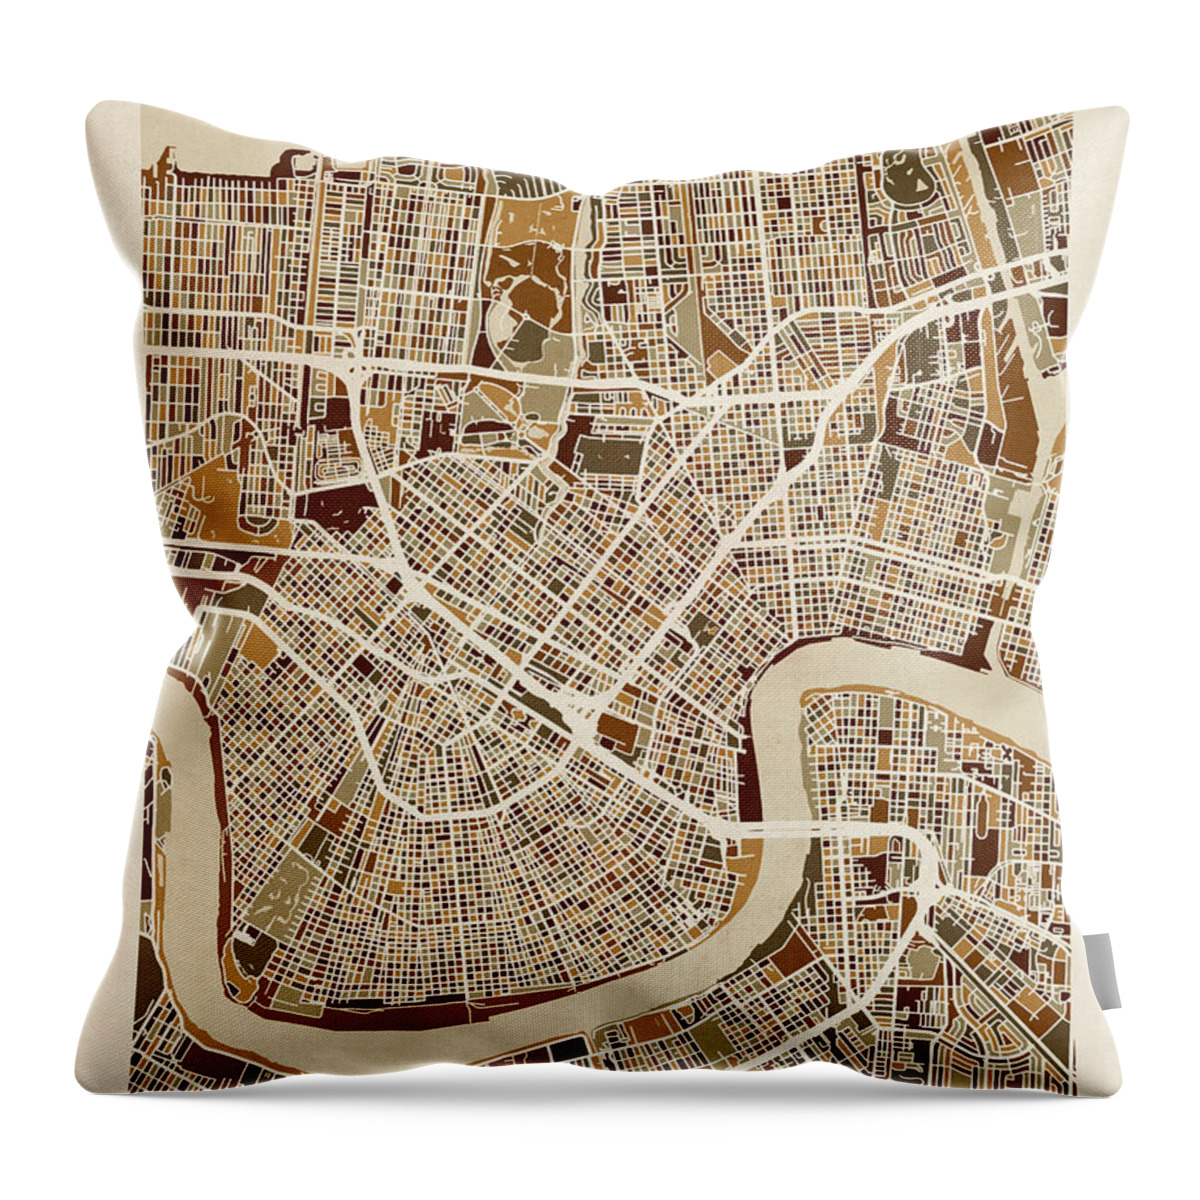 Street Map Throw Pillow featuring the digital art New Orleans Street Map by Michael Tompsett